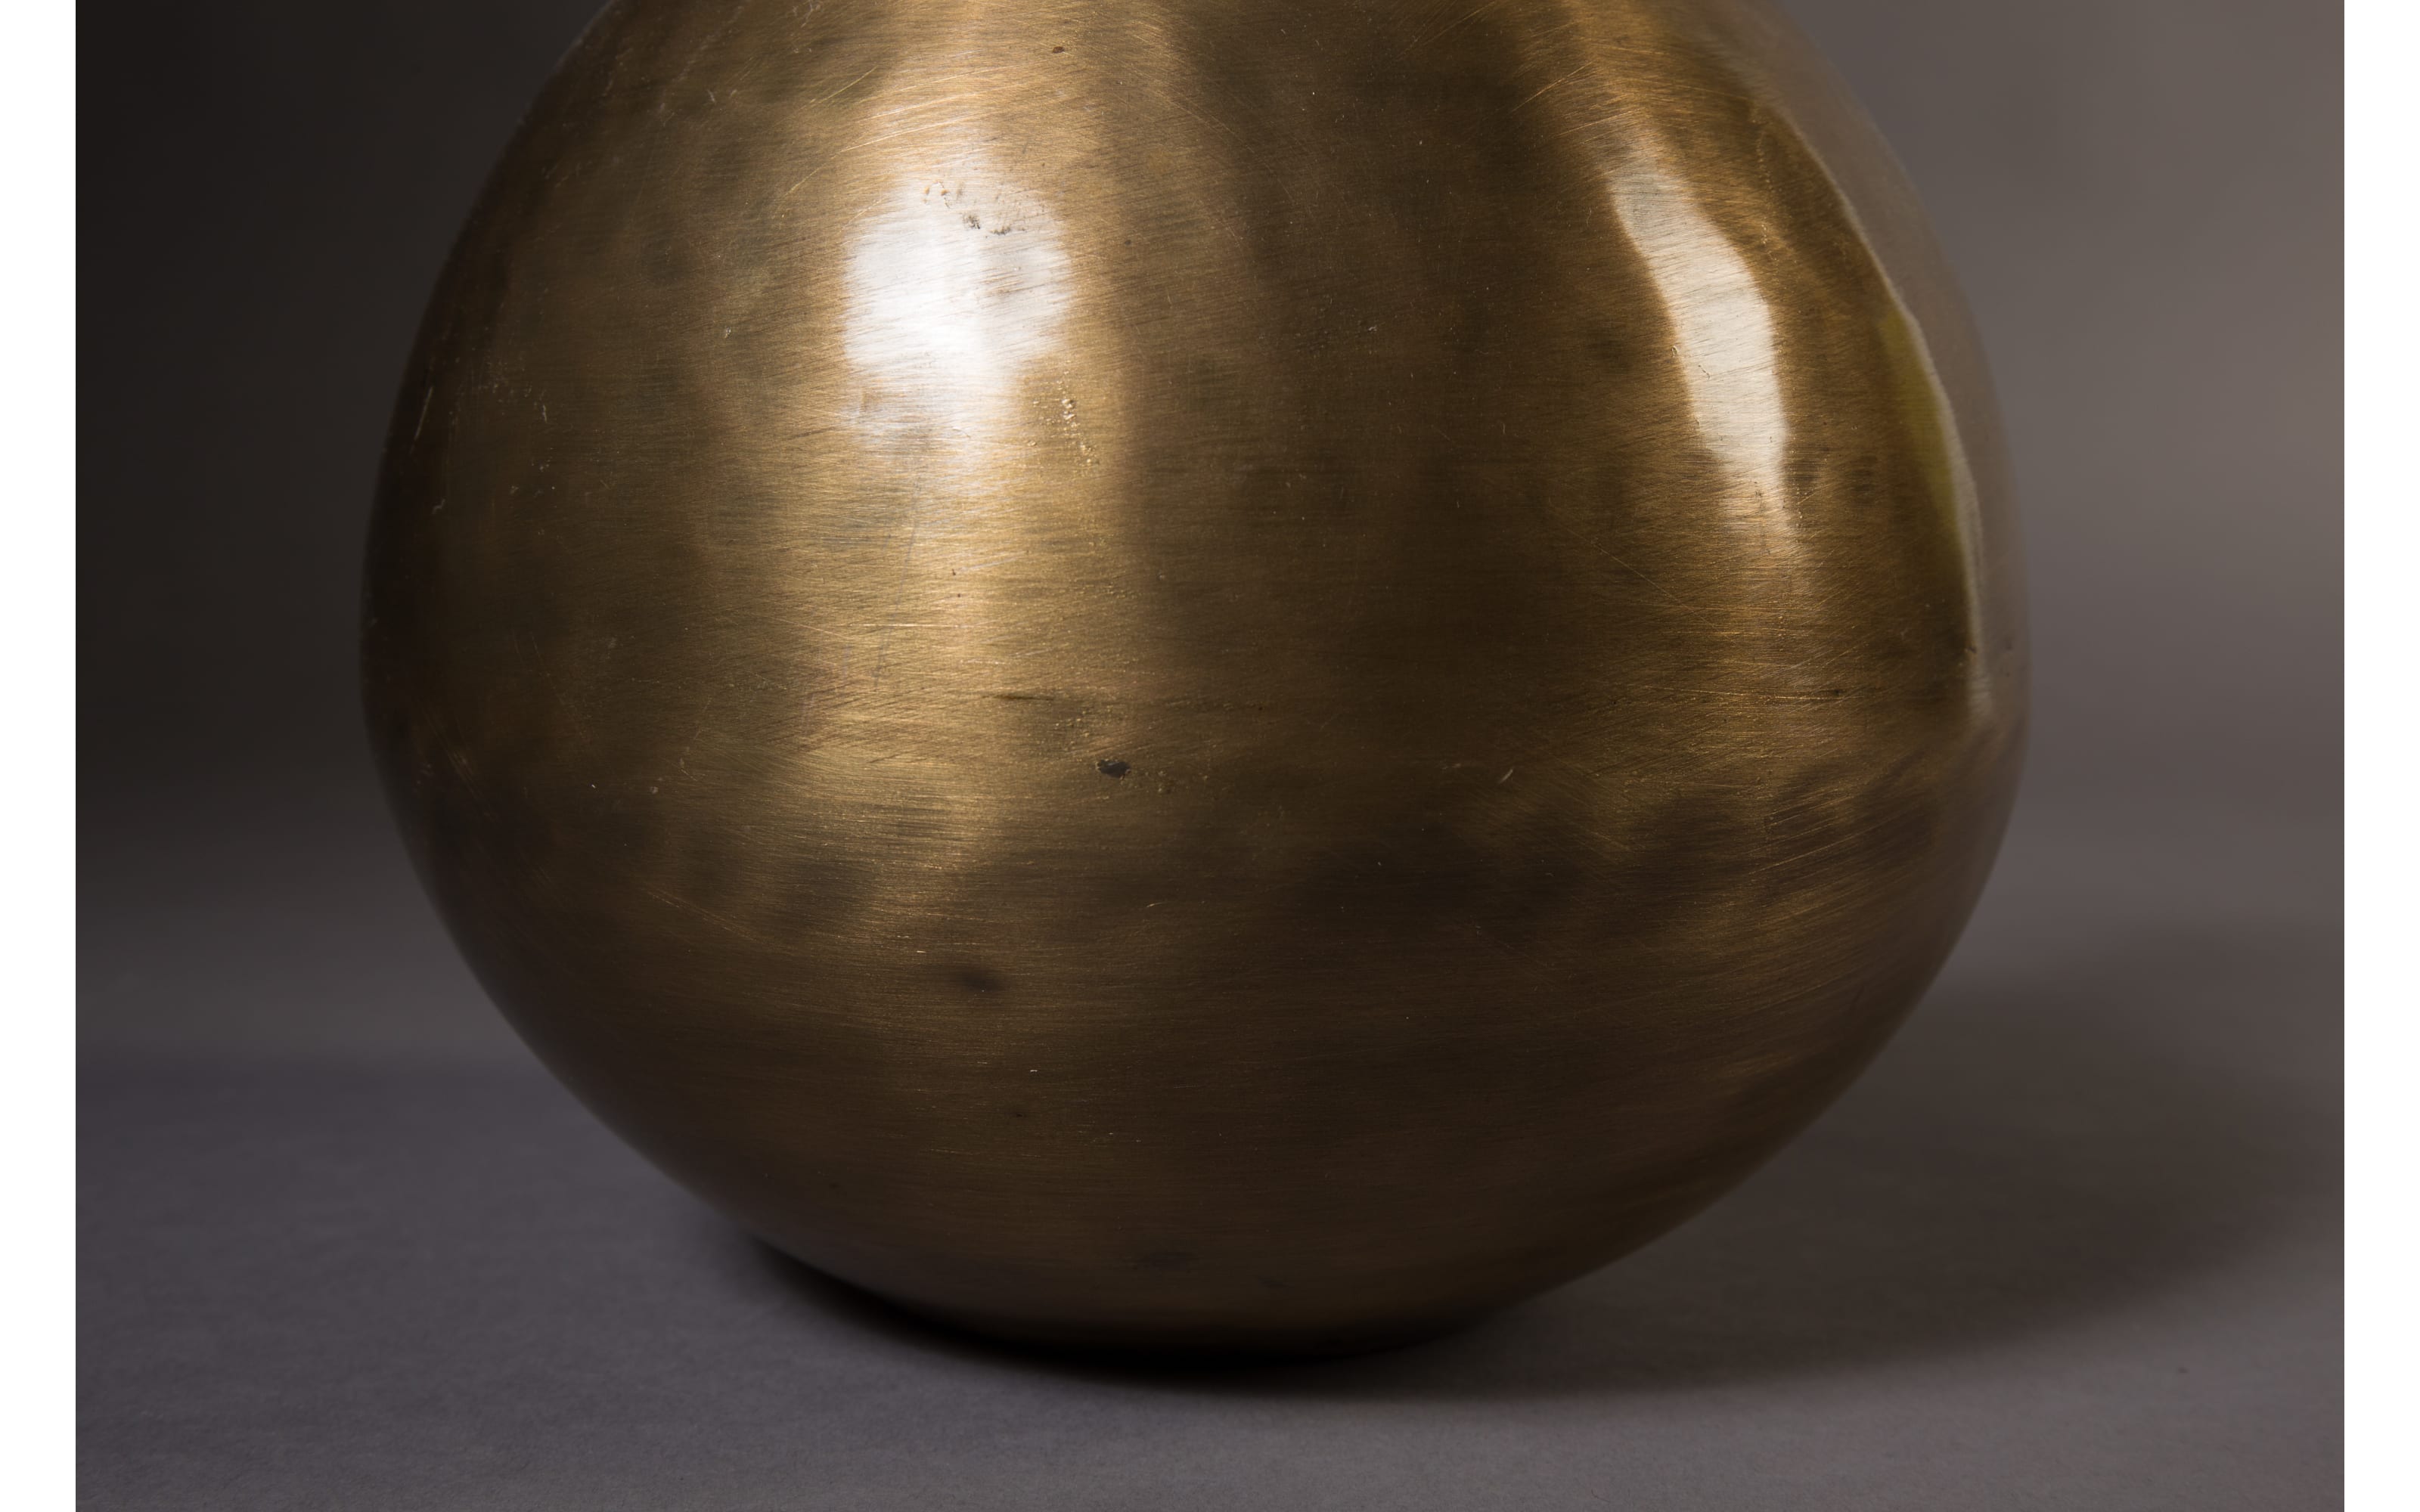 Vase Hari Fat aus vermessingtes Eisen in gold, 31 cm